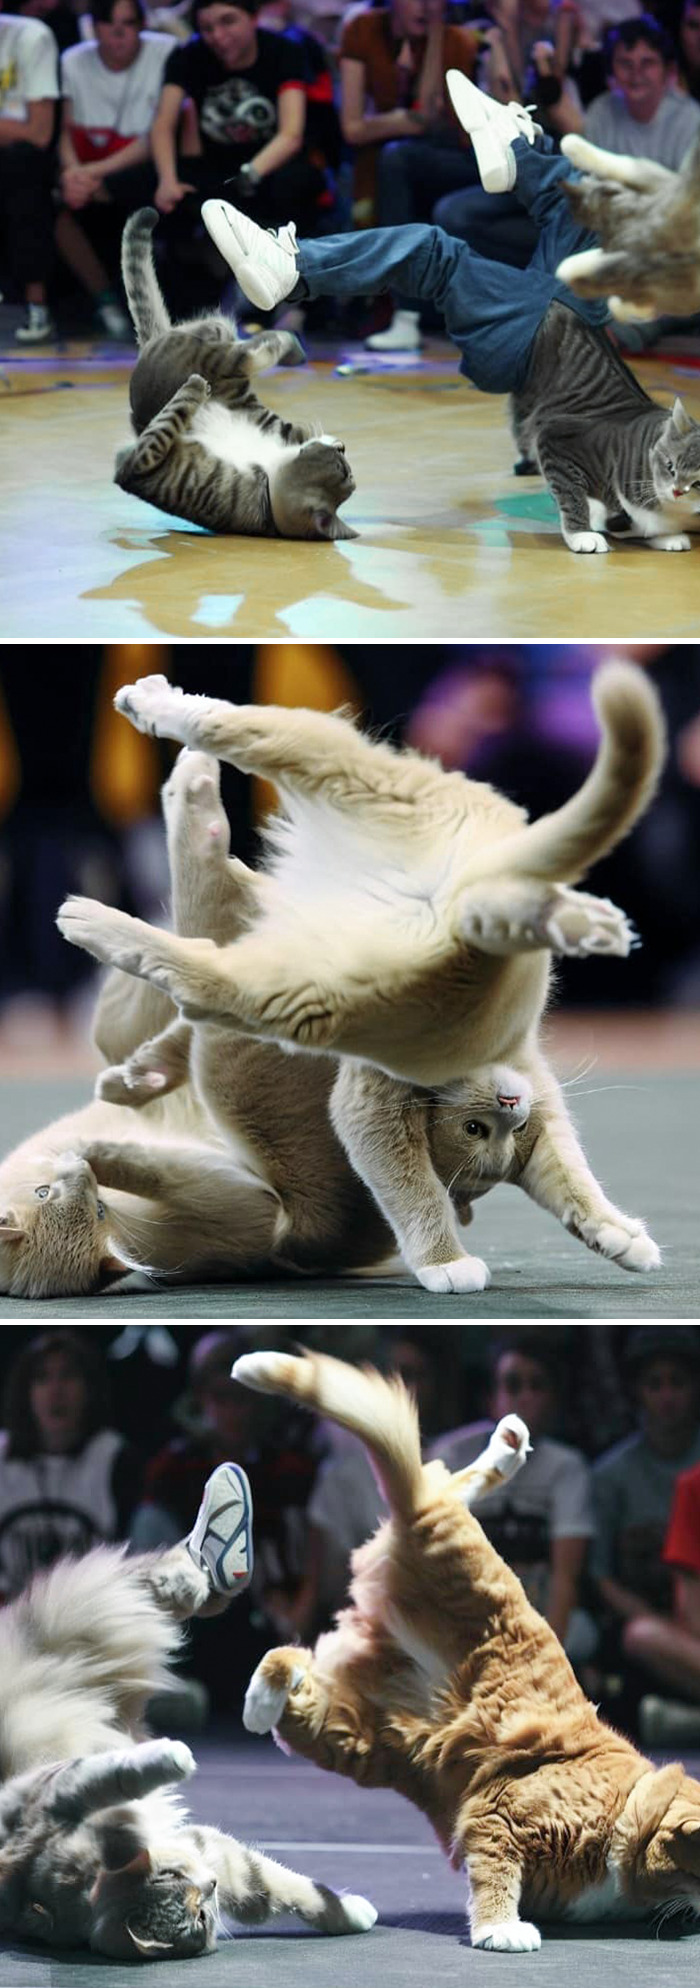 Concours de breakdance pour chats. L’un d’entre eux a même des jambes humaines.